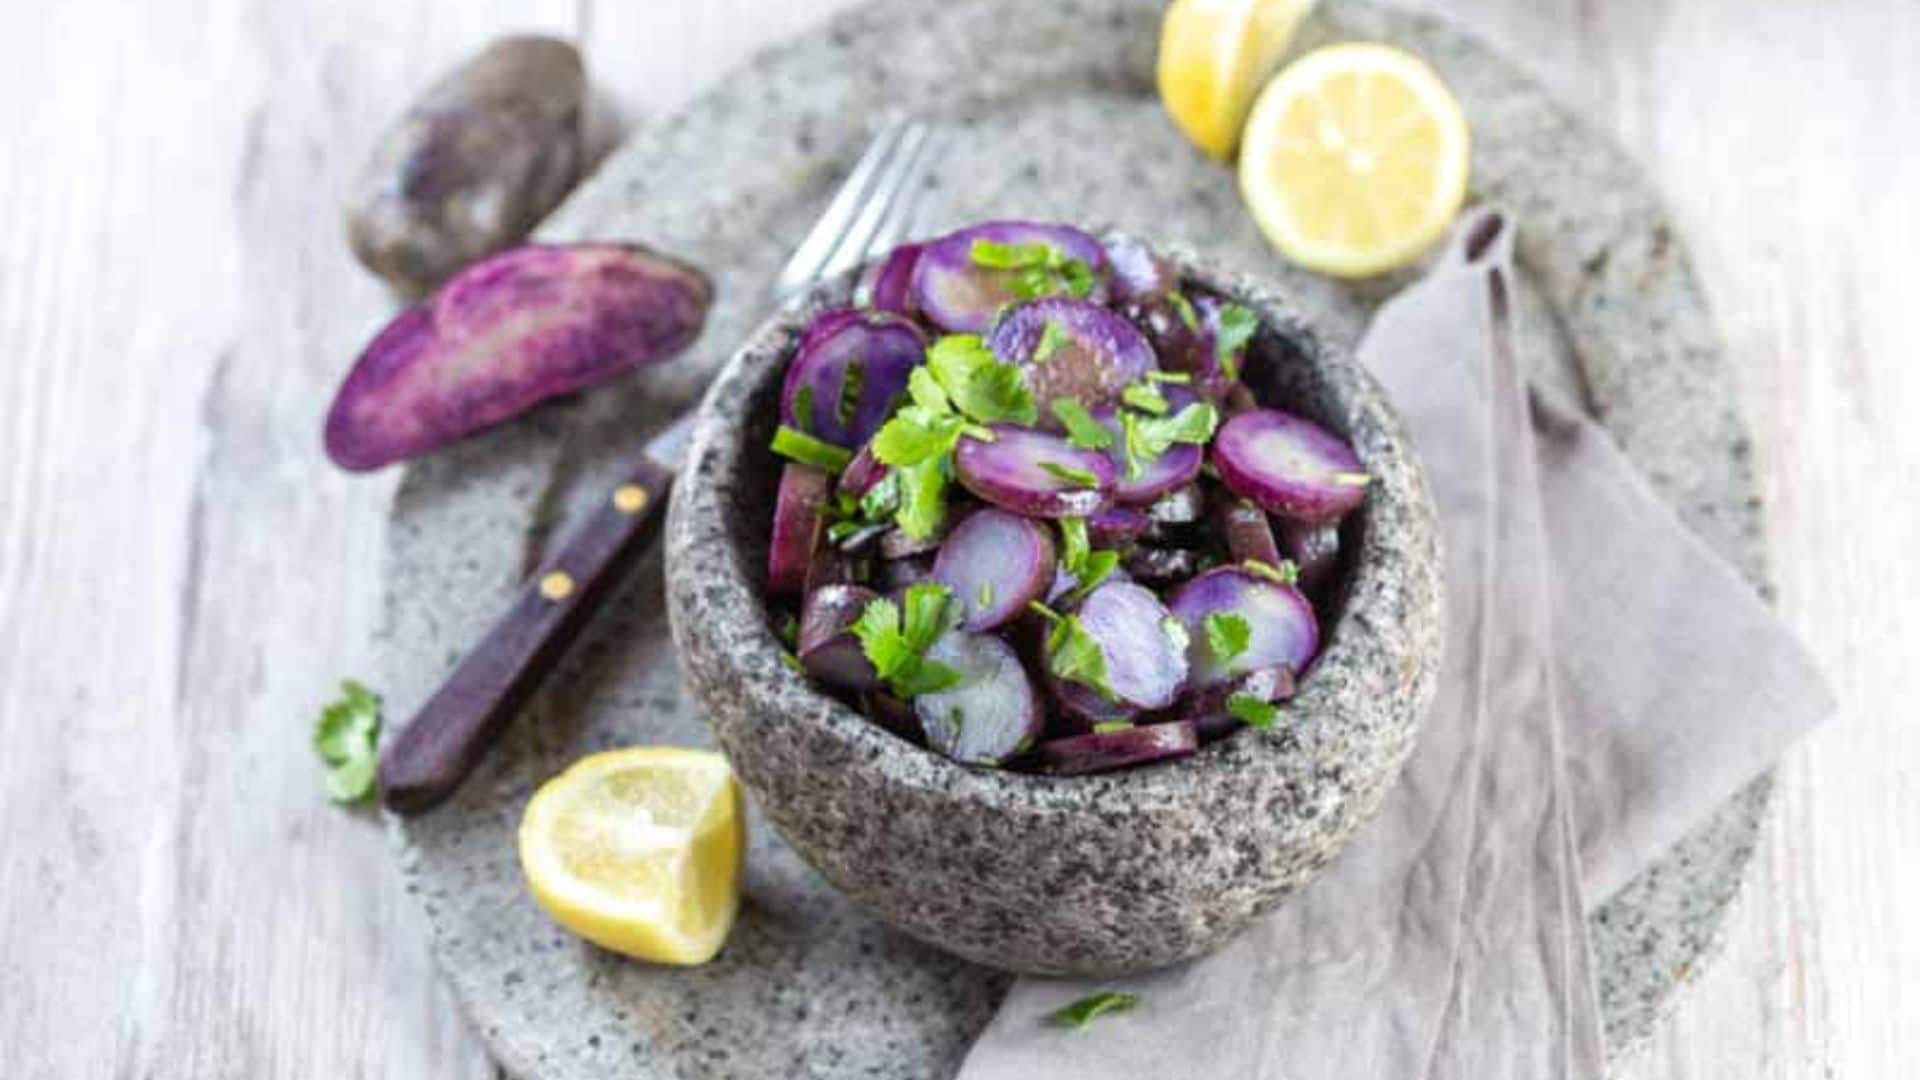 Ensalada de patata violeta con cebolleta, limón y cilantro